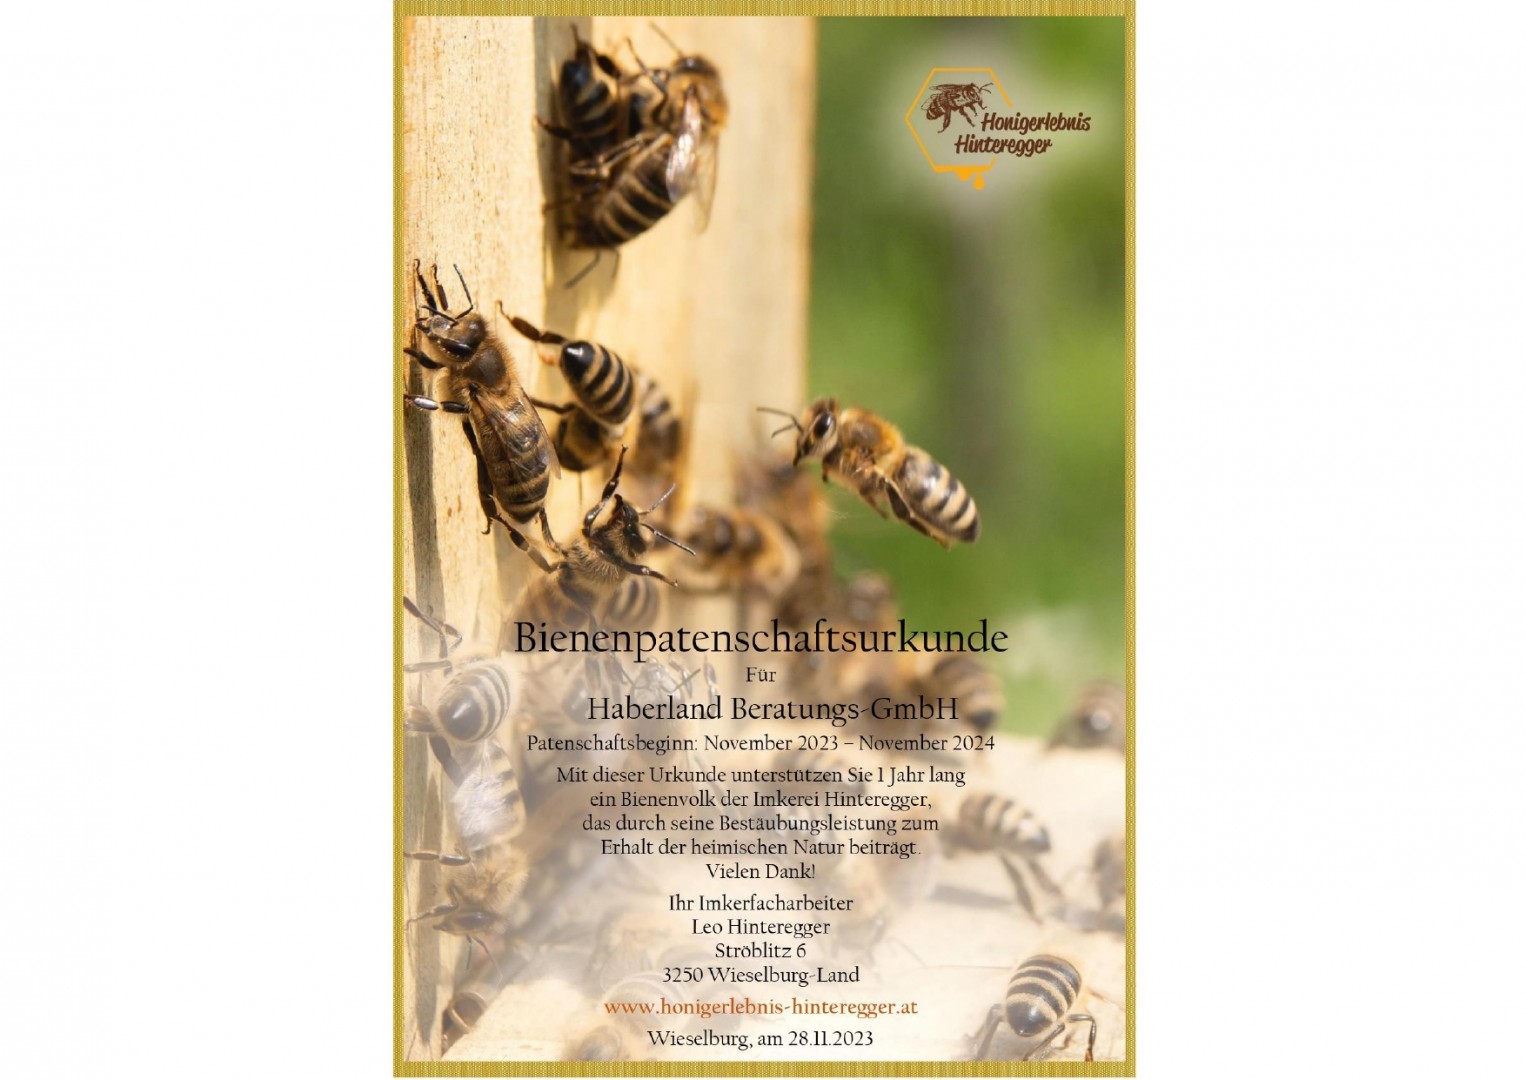 Blogbeitrag: Süße Verantwortung übernehmen: Bienenpatenschaft mit Honigerlebnis Hinteregger